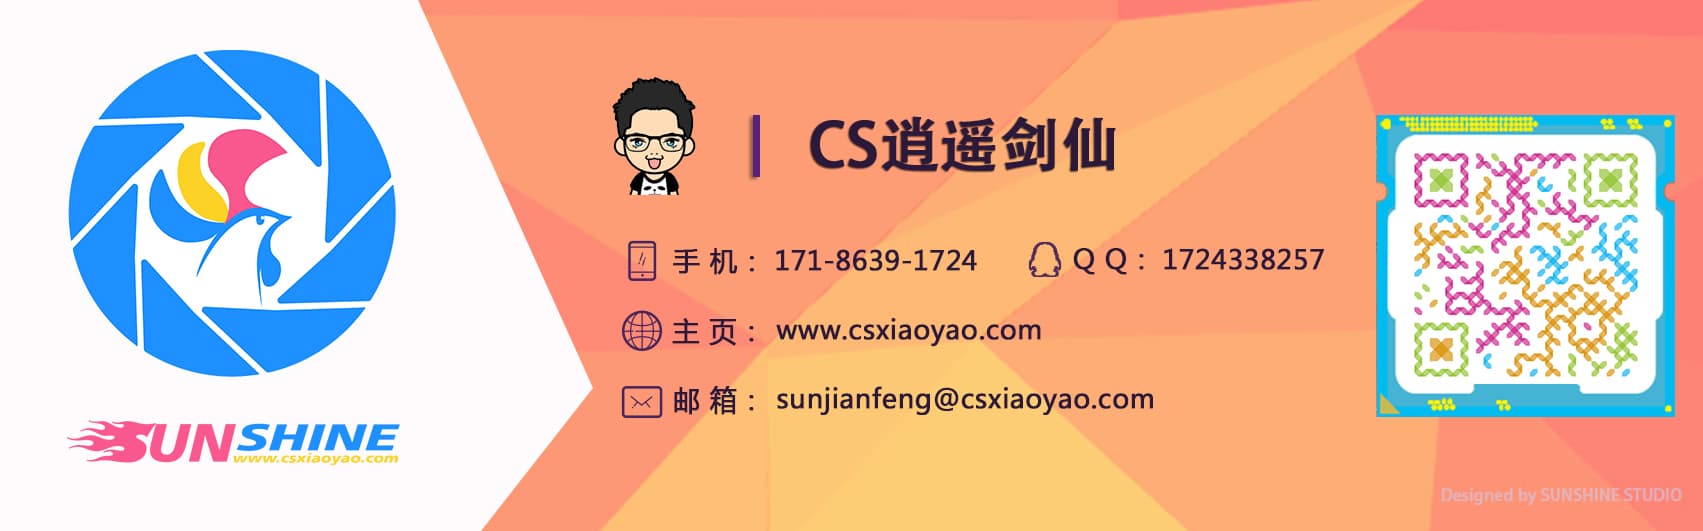 WebStudy06_移动端+less+bootstrap+zepto-禅林阆苑